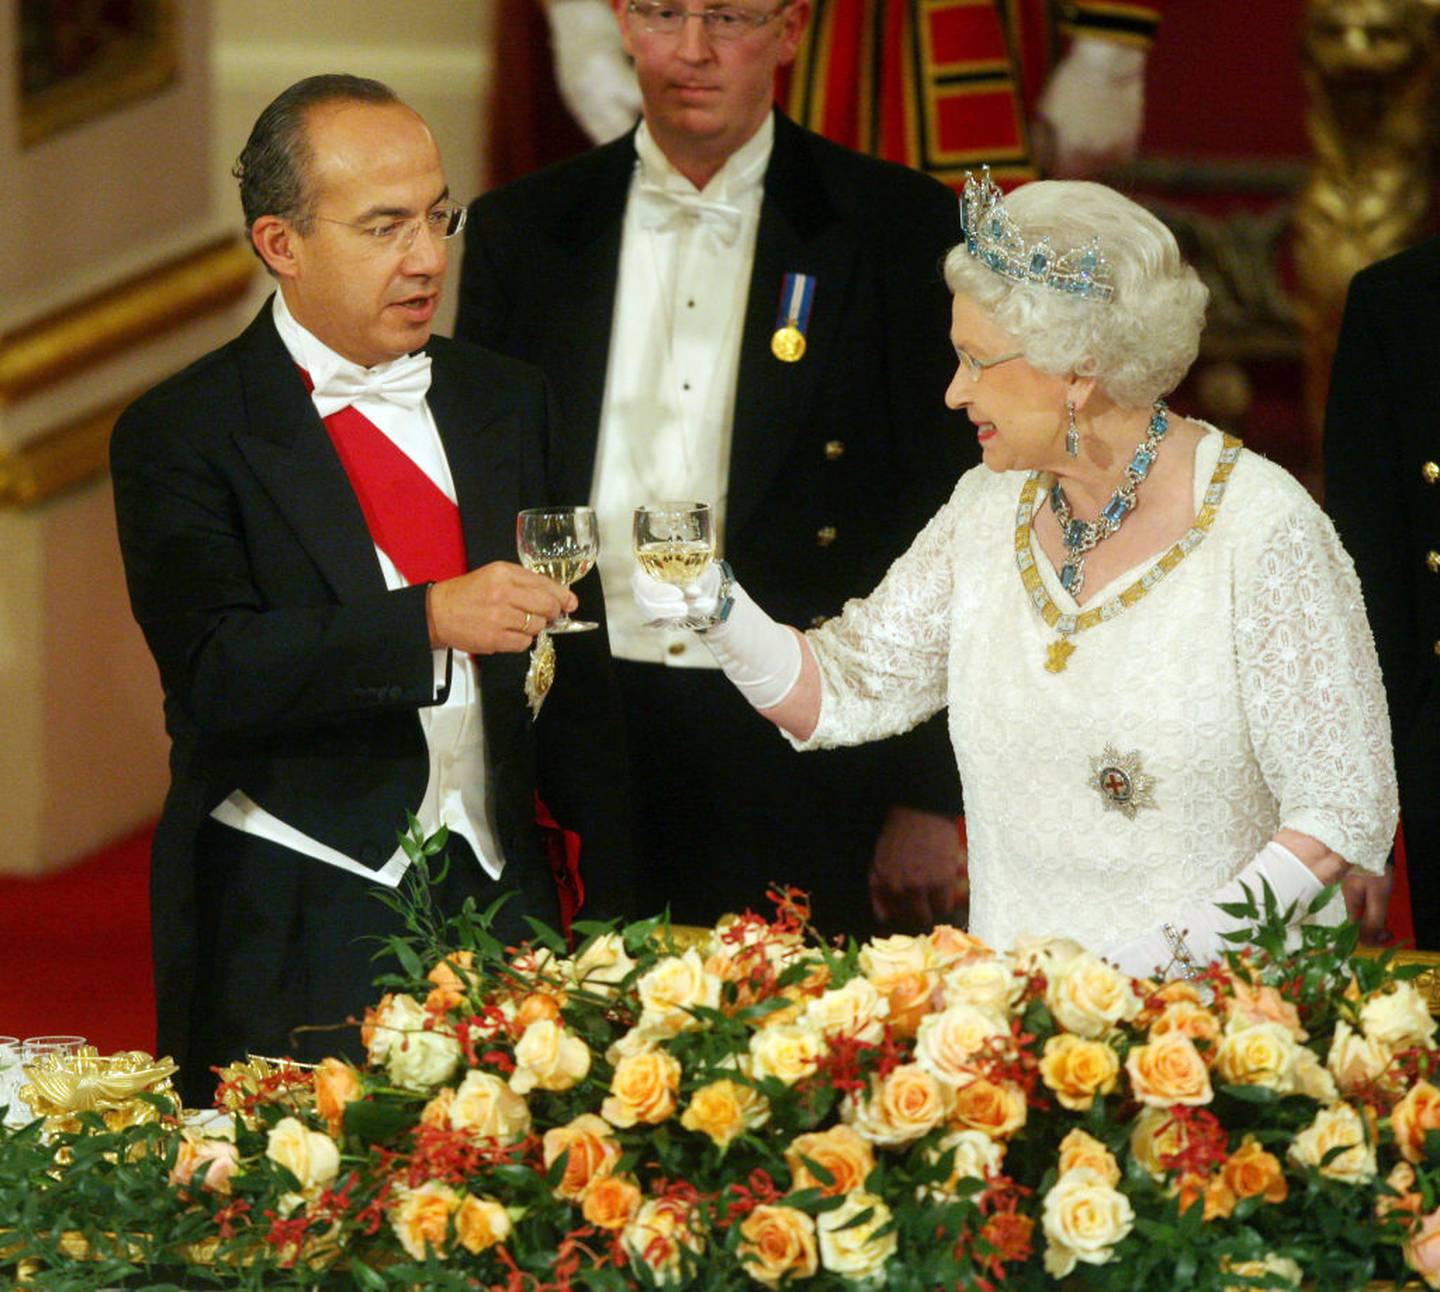 LONDRES - 30 DE MARZO: La Reina Isabel II y el Presidente de México Felipe Calderón (izq.) brindan con sus copas durante un banquete de Estado ofrecido por la Reina en honor del presidente y la primera dama visitantes, dentro del Salón de Baile del Palacio de Buckingham el 30 de marzo de 2009 en Londres, Inglaterra. El Presidente de los Estados Unidos Mexicanos, Felipe Calderón, y su esposa, Margarita Zavala de Calderón, realizan una visita de Estado de cuatro días al Reino Unido, del 30 de marzo al 2 de abril (Foto de Johnny Green/WPA Pool/Getty Images)